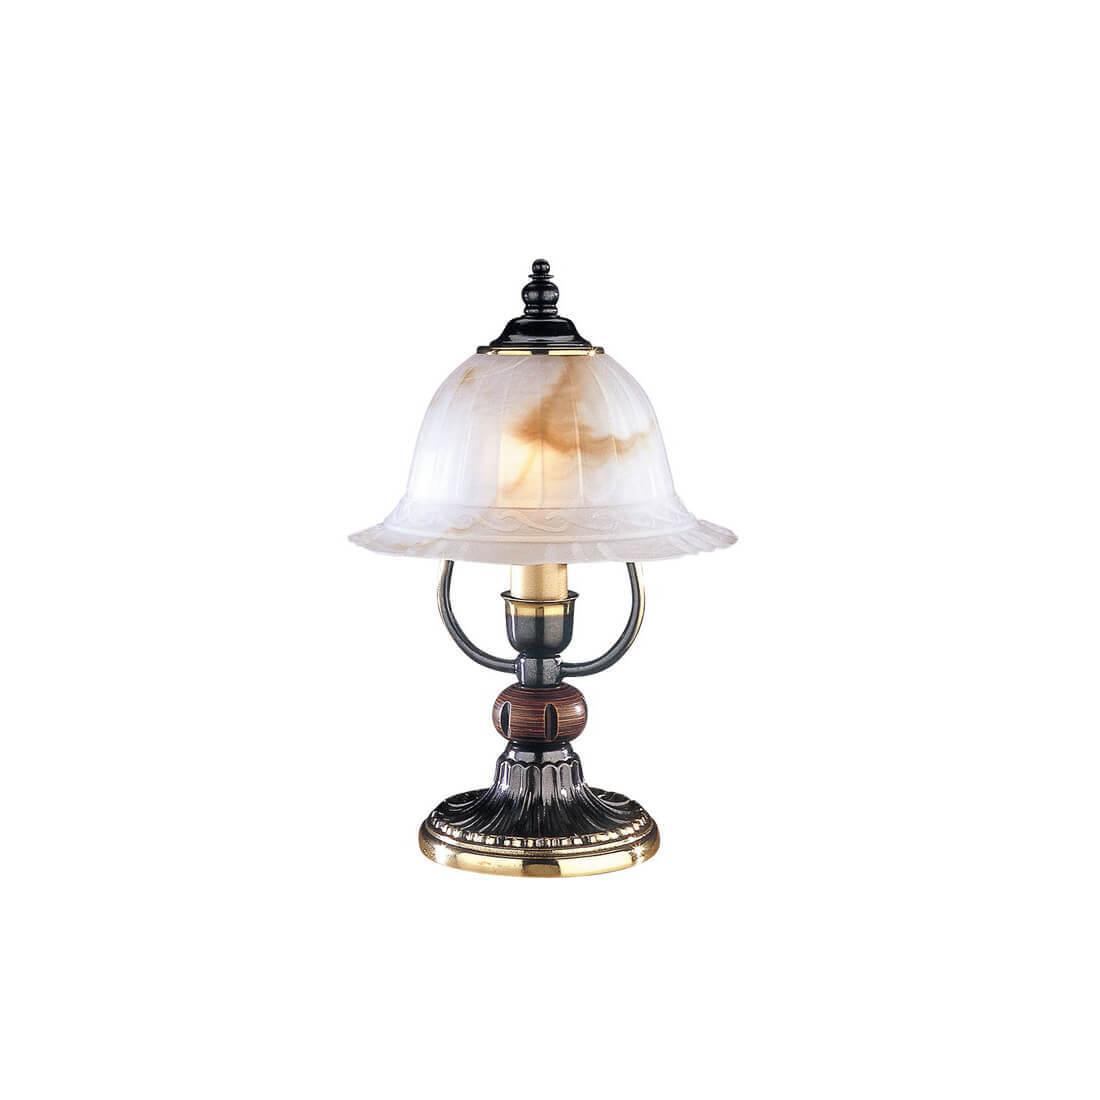 Настольная лампа Reccagni Angelo P.2701 настольная лампа мармор e14 40вт белый золотой 23х23х35 см